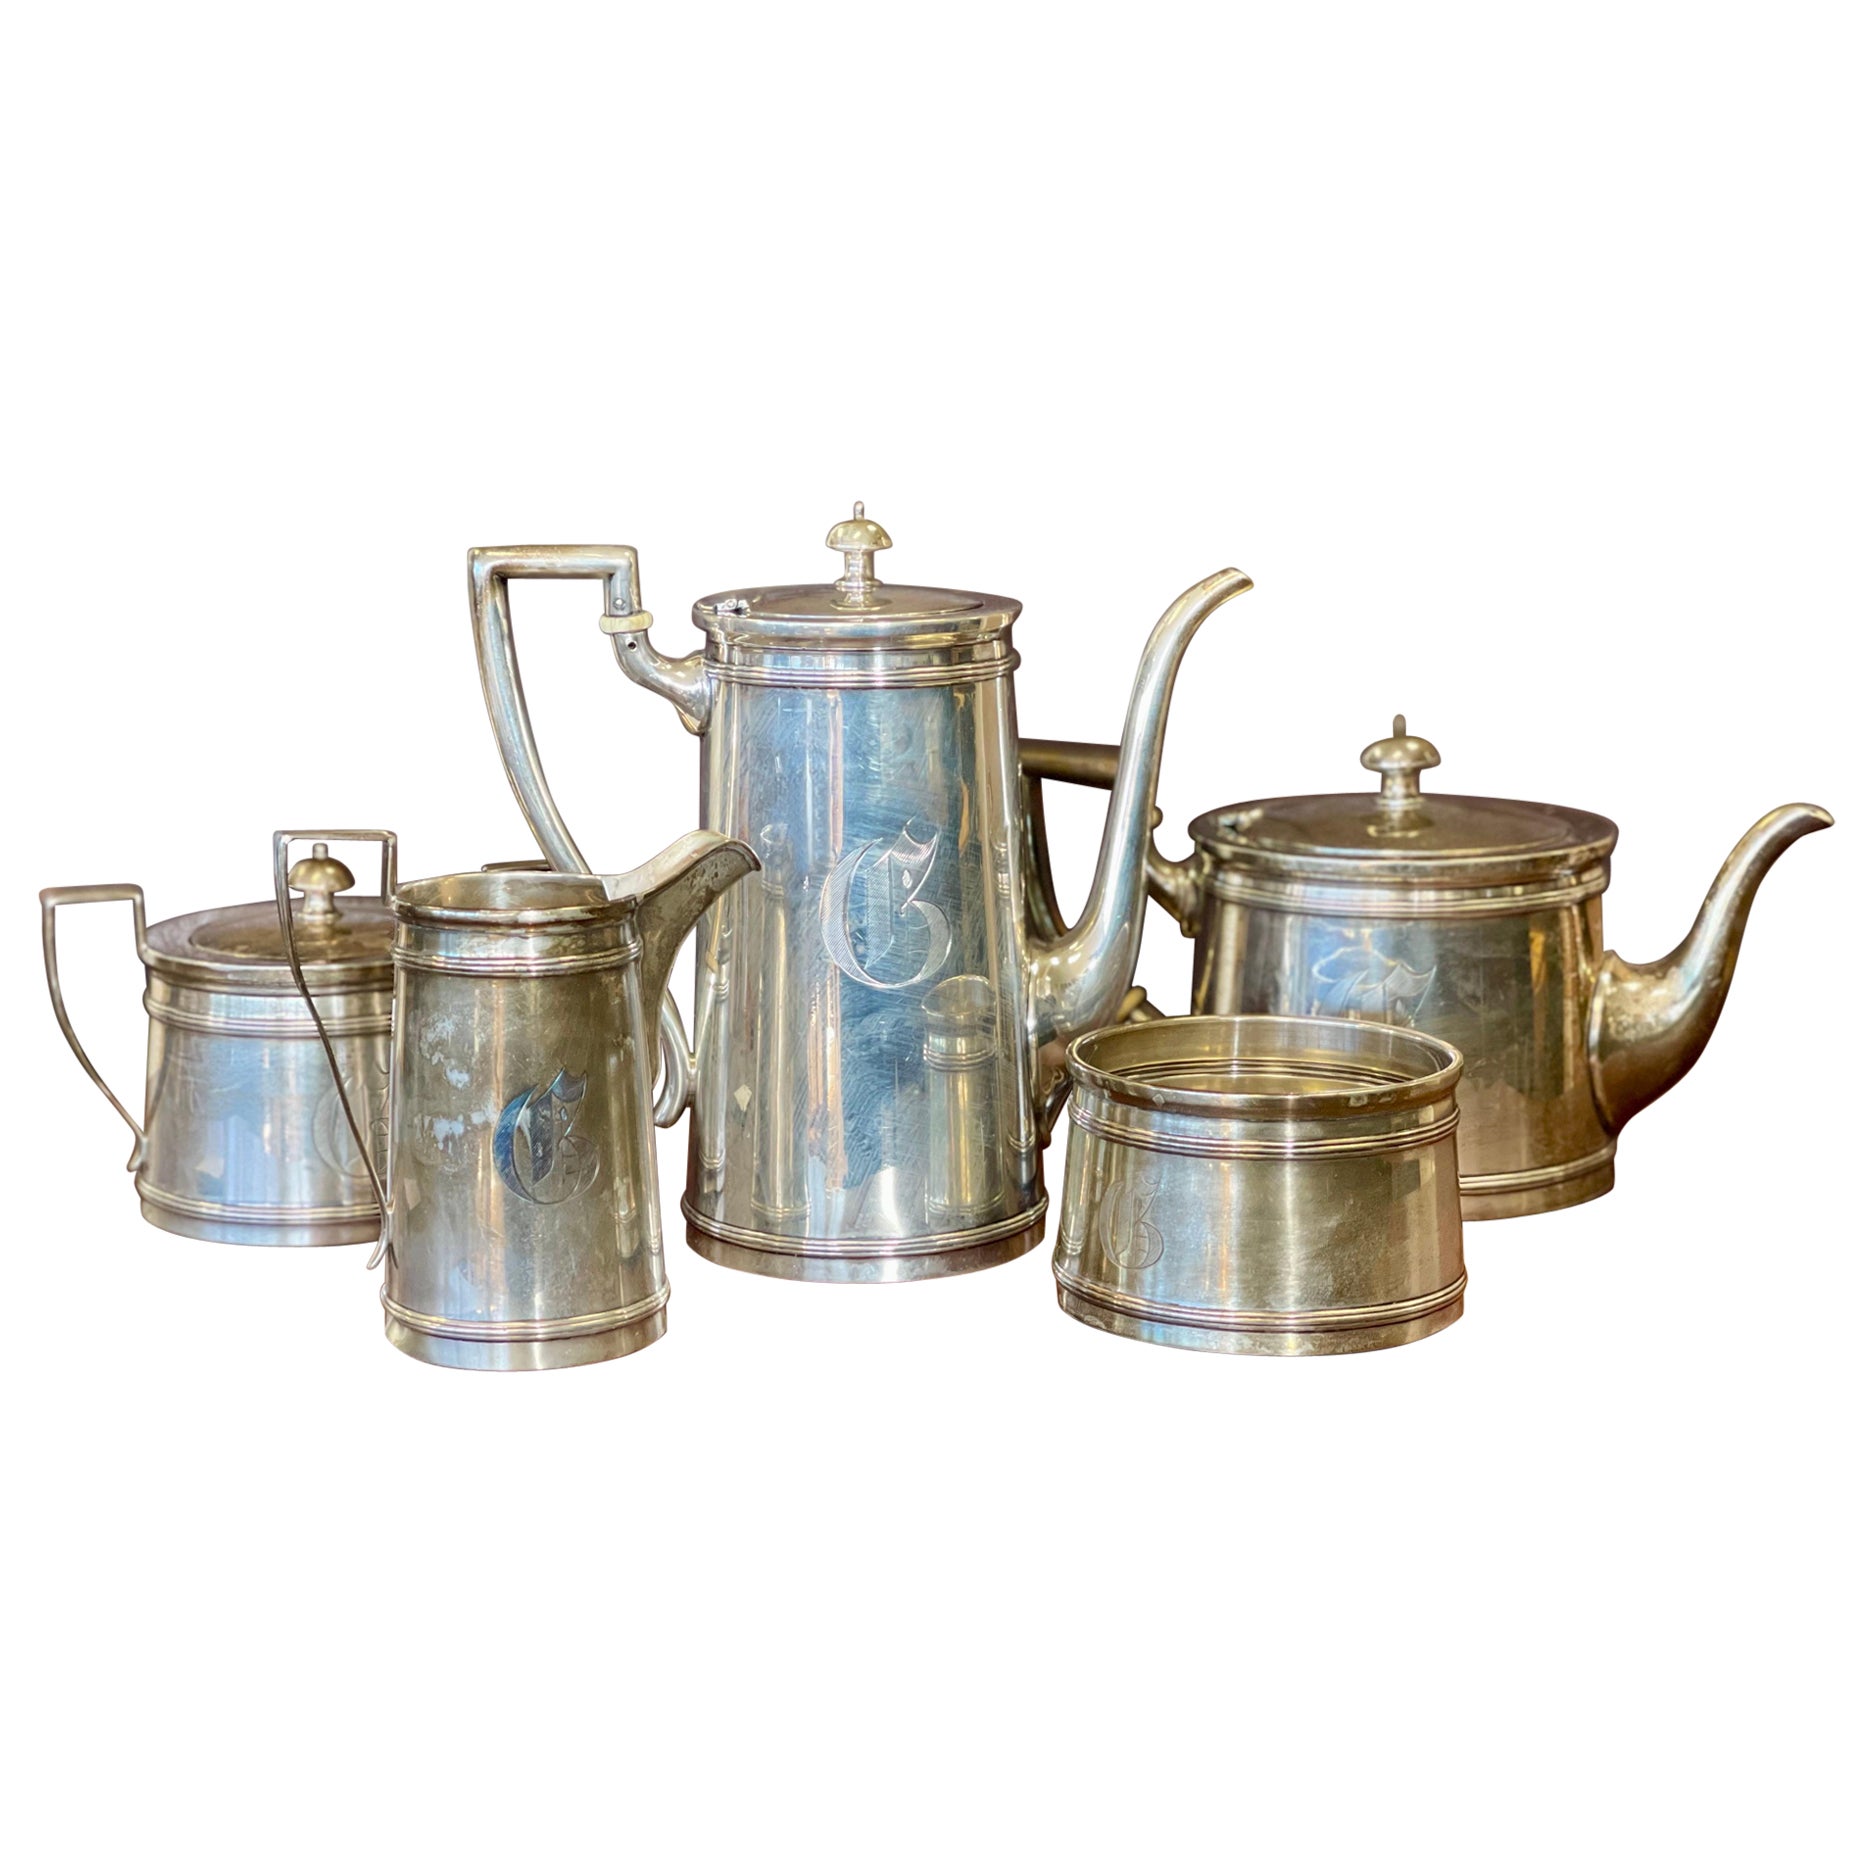 Meriden Britannia 5-Piece Sterling Silver Tea Coffee Set Service 2132 Grams